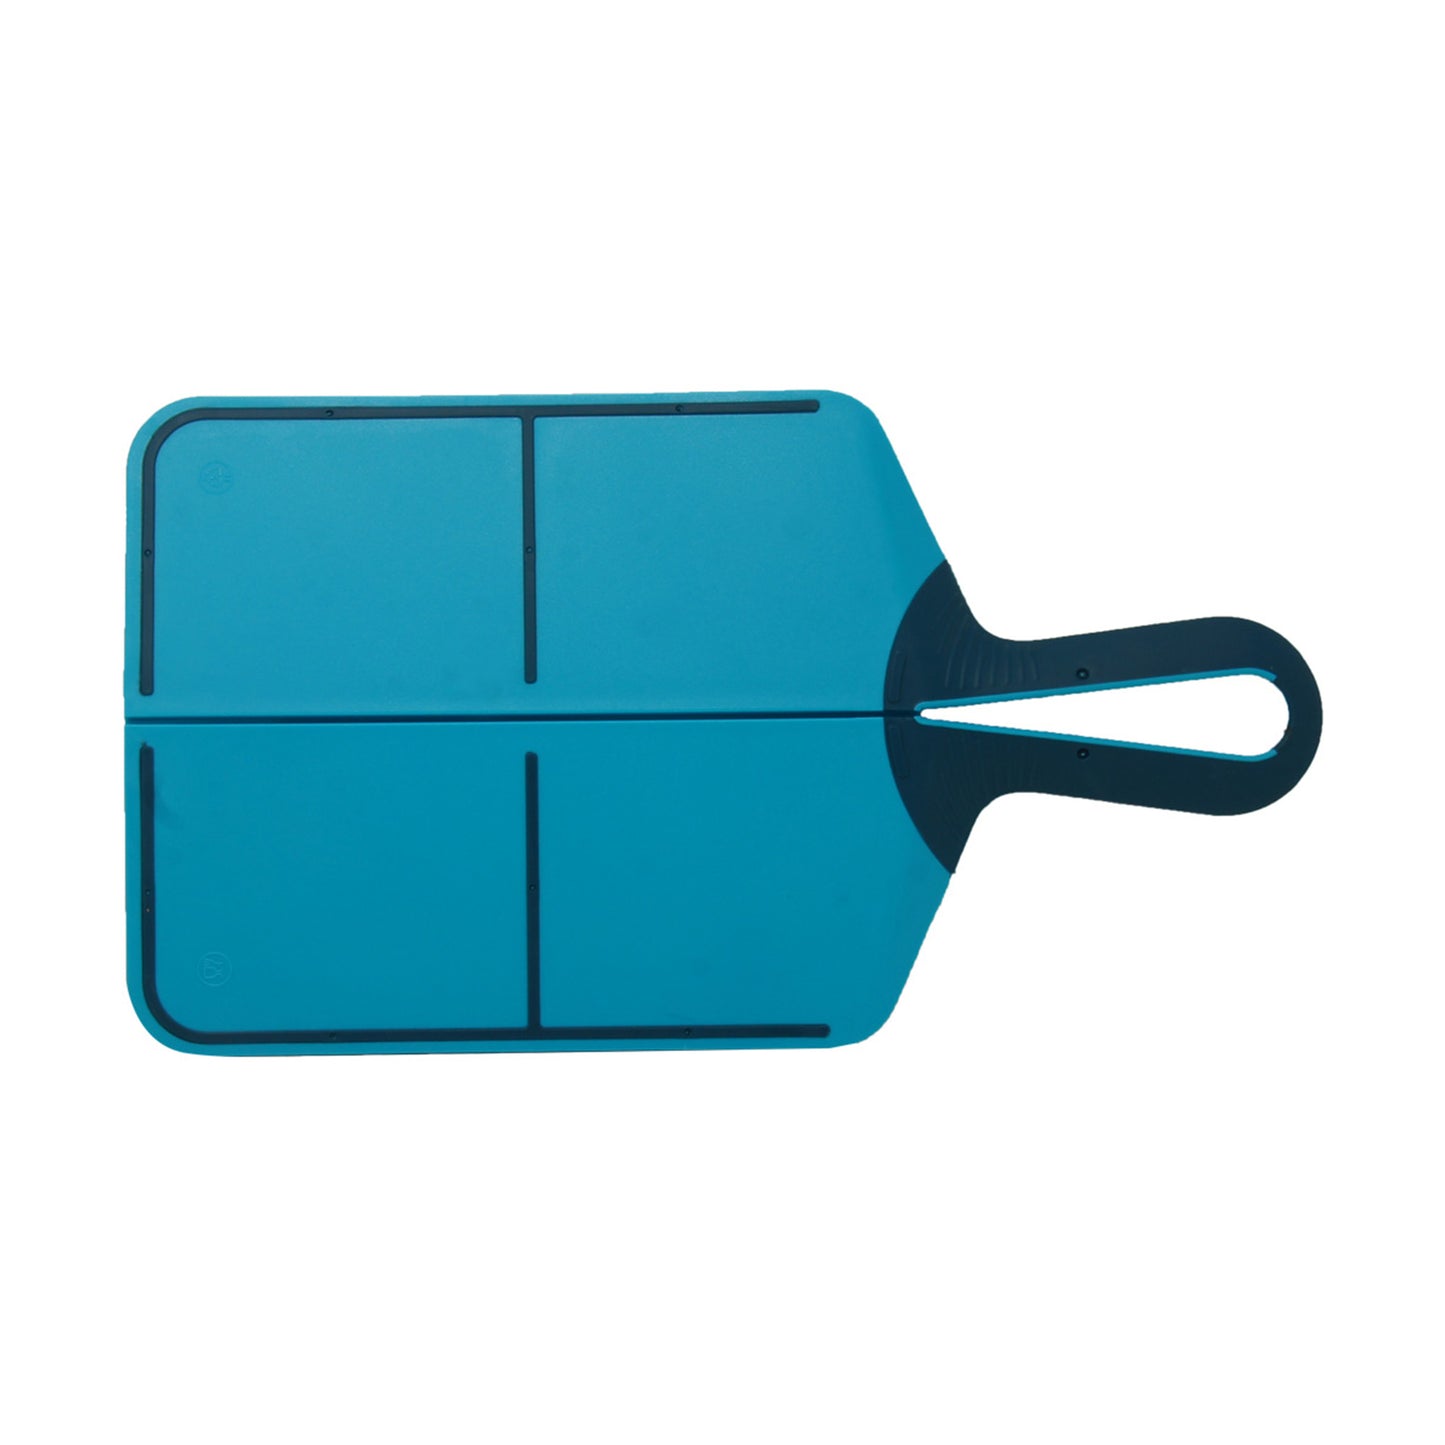 Tabla para Picar de Plástico Plegable (Azul) (21.5cm x 39cm x 0.5cm)